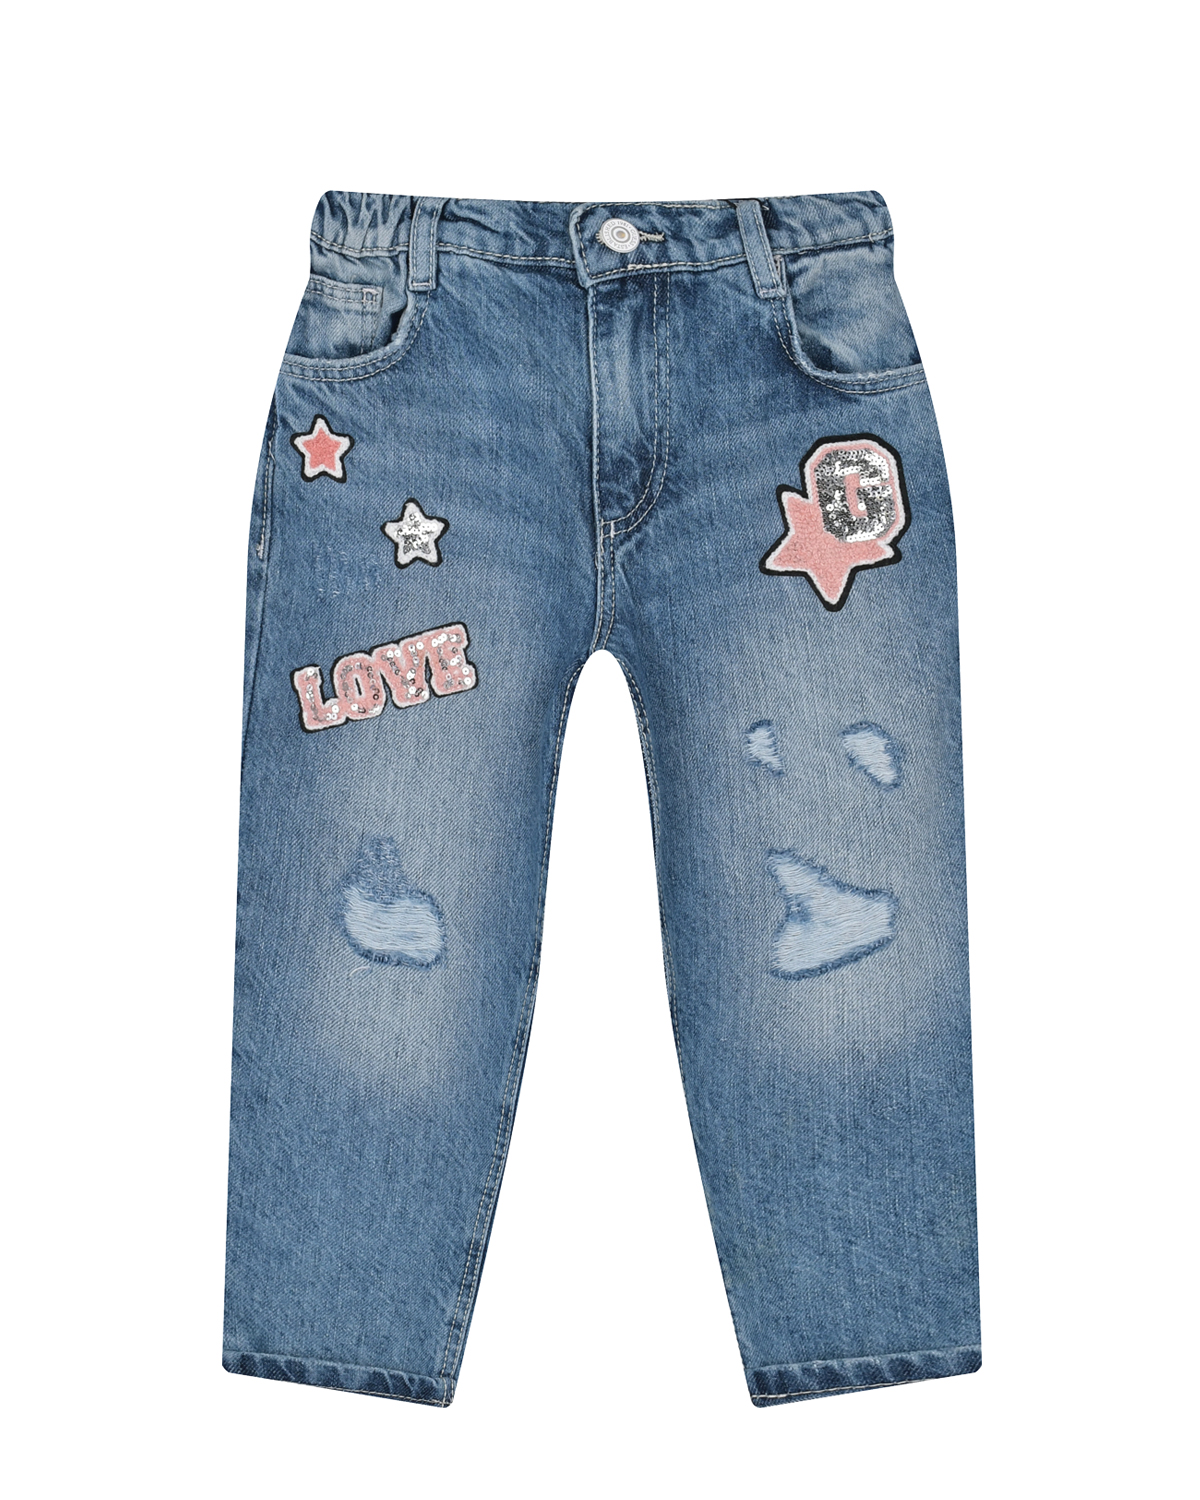 Брюки джинсовые с декором "звезды" Guess детские, размер 92, цвет синий